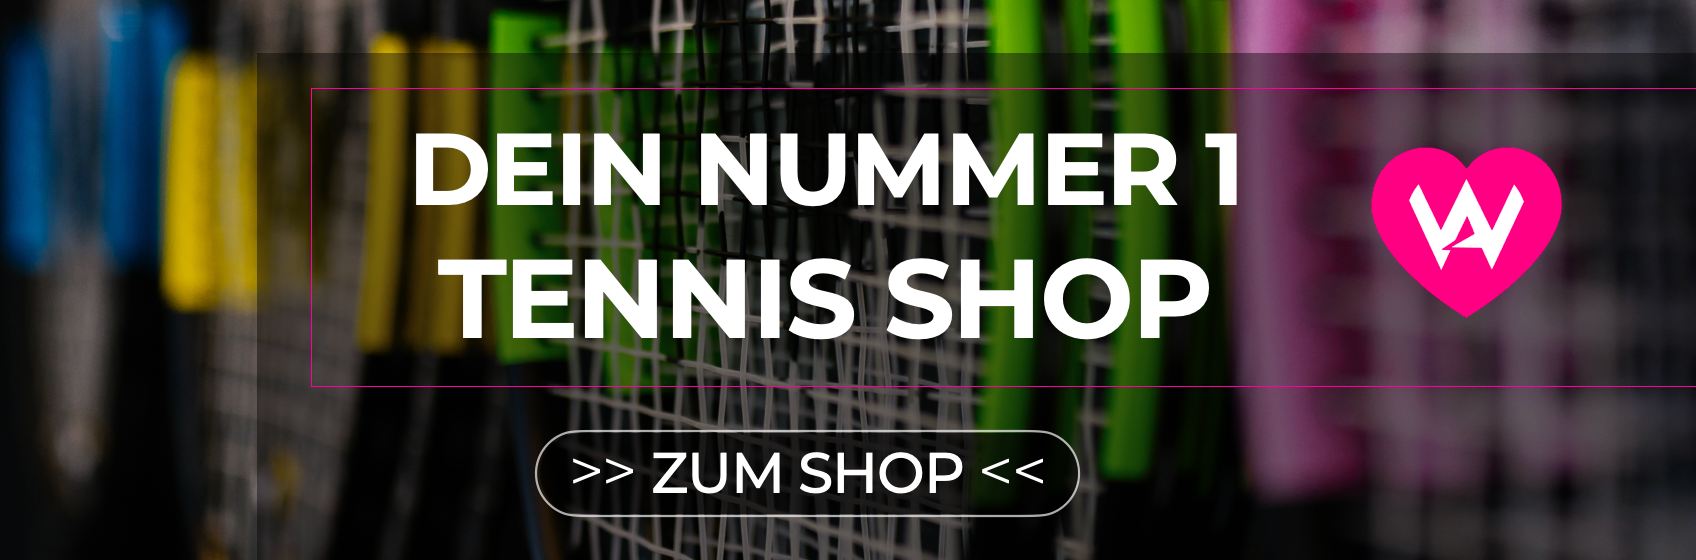 ACADEMY LABEL Online Shop für Tennisartikel and Zubehör